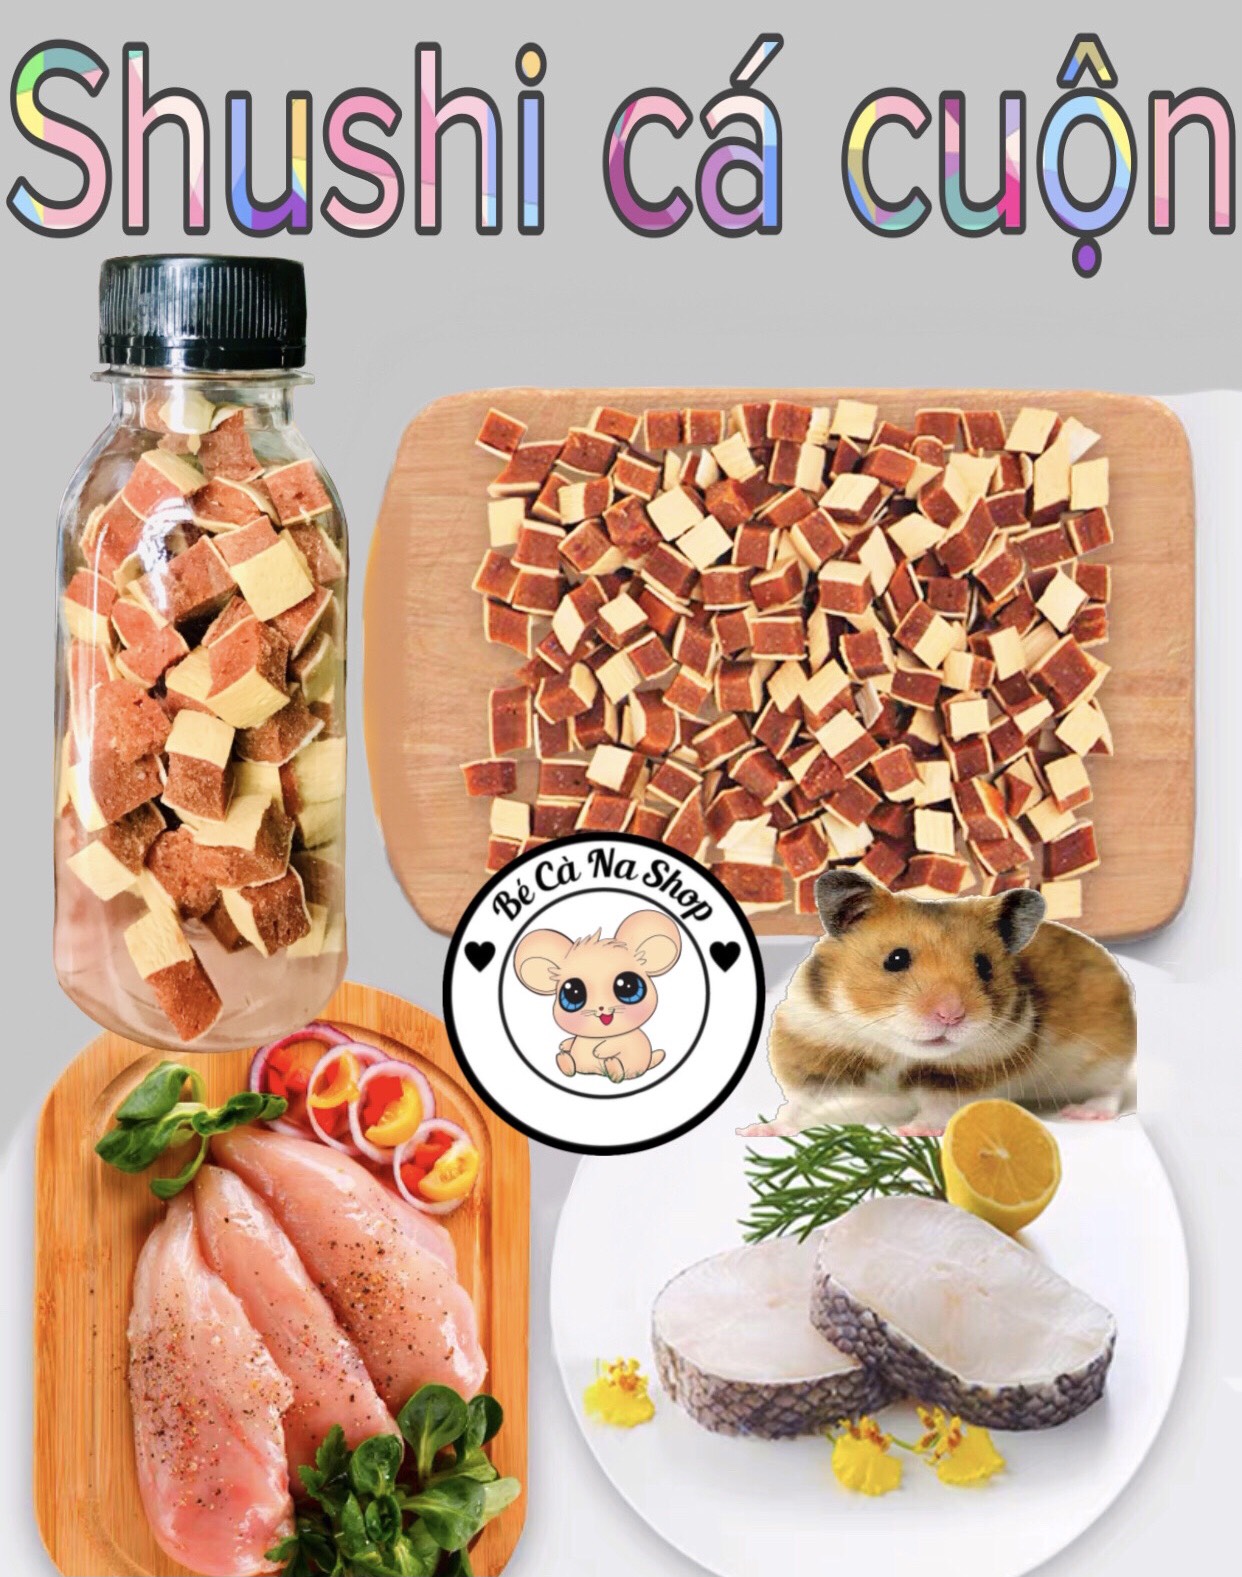 shushi cá cuộn dinh dưỡng cao cấp (bé cà na) thức ăn dinh dưỡng cho hamster , thỏ bọ sóc chinchilla...